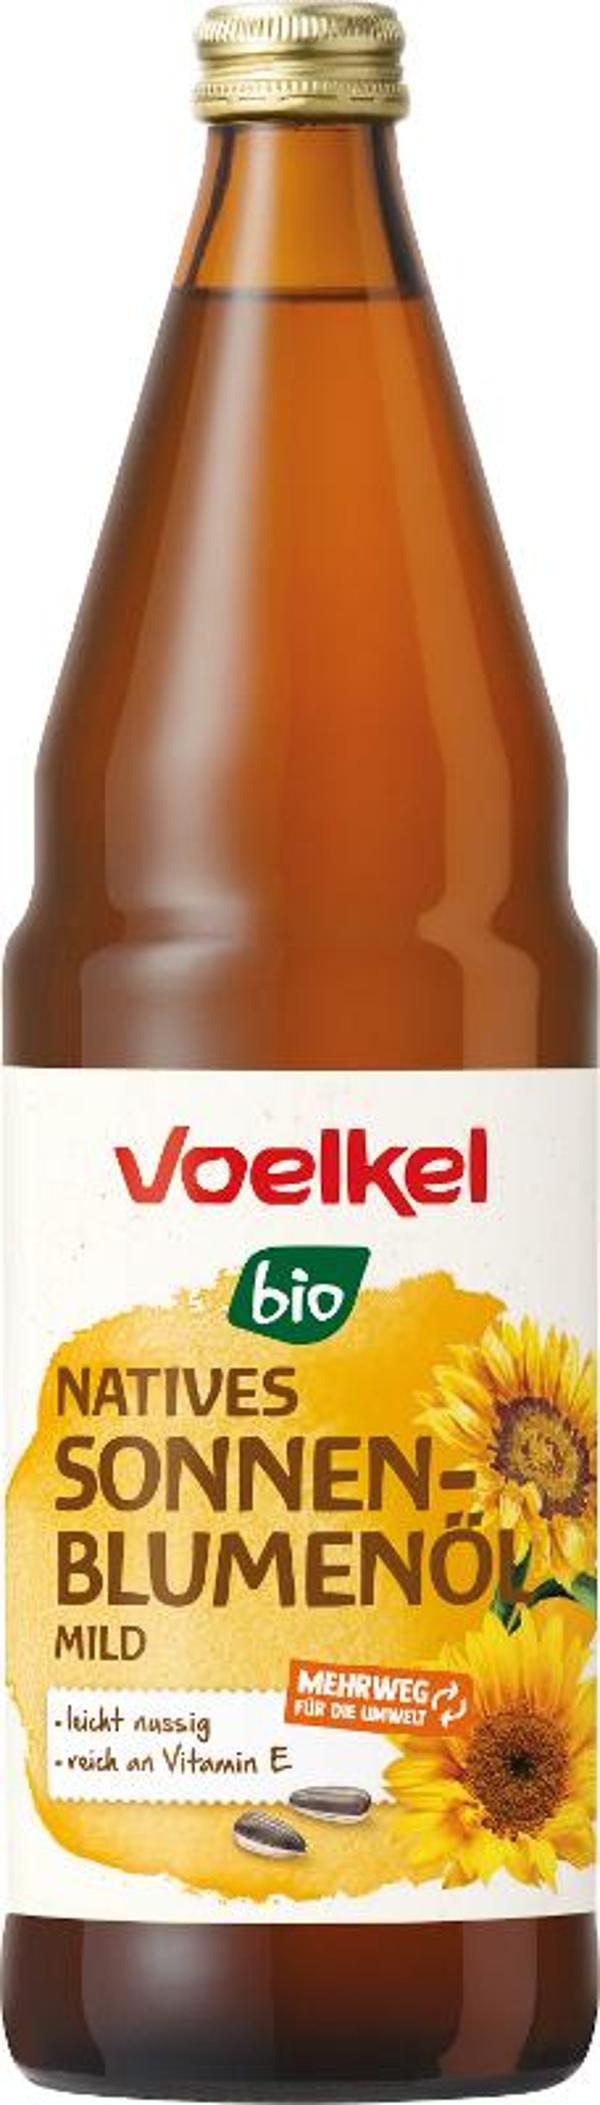 Produktfoto zu Sonnenblumenöl mild nativ 0,75l Voelkel